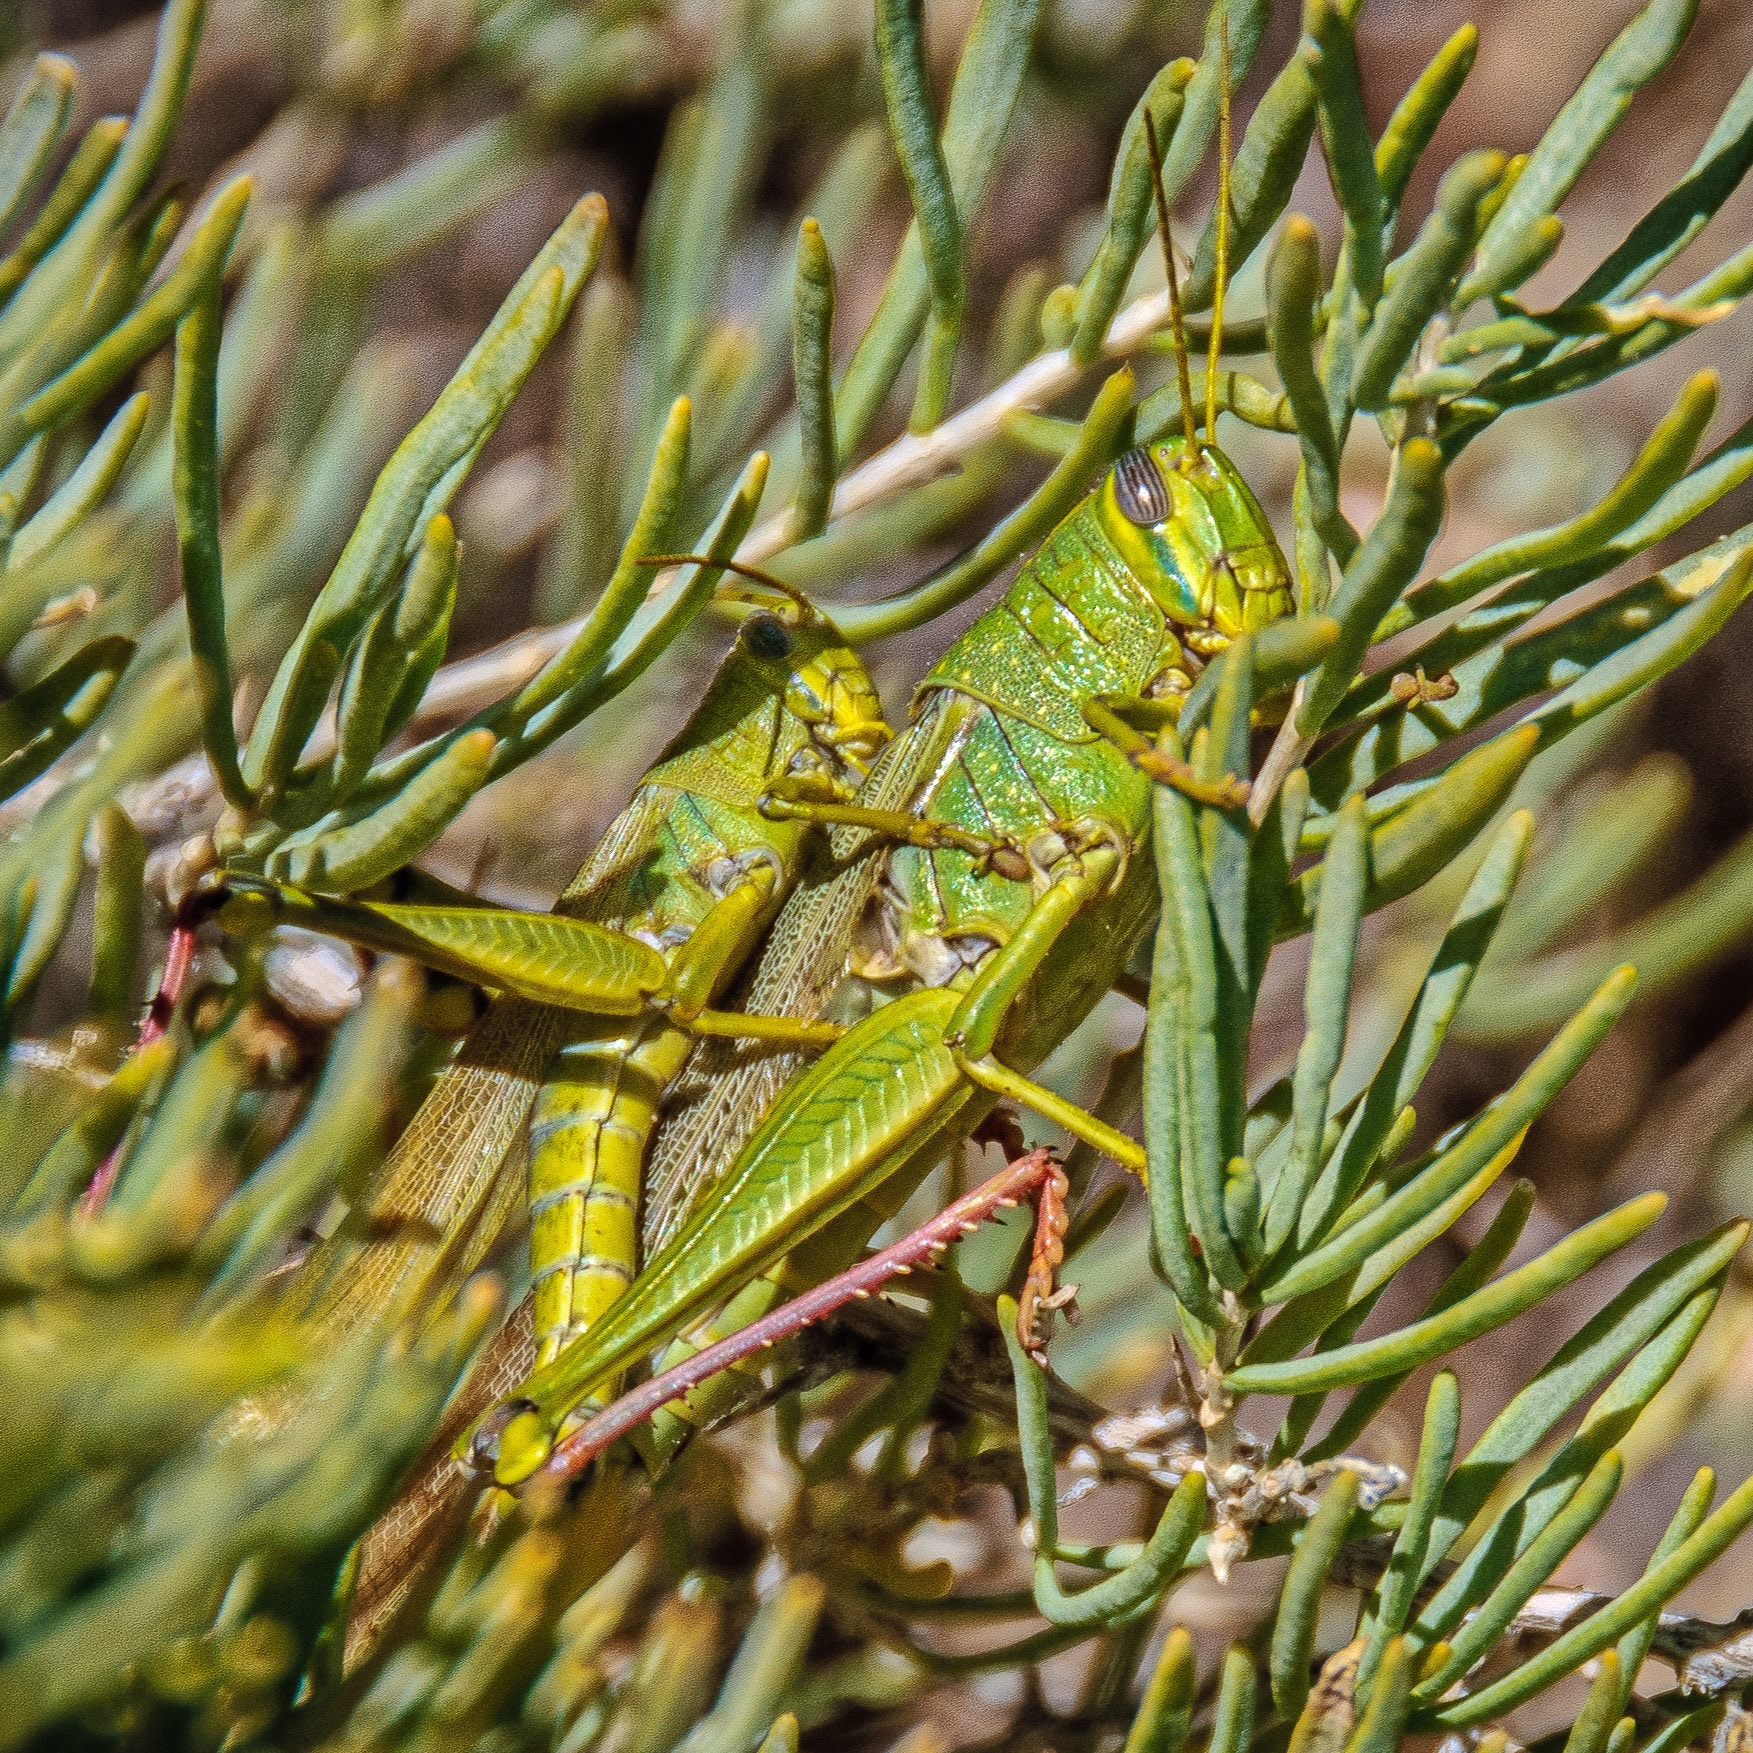 Desert Grasshopper along Cub Creek in Dinosaur National Monument in Utah.